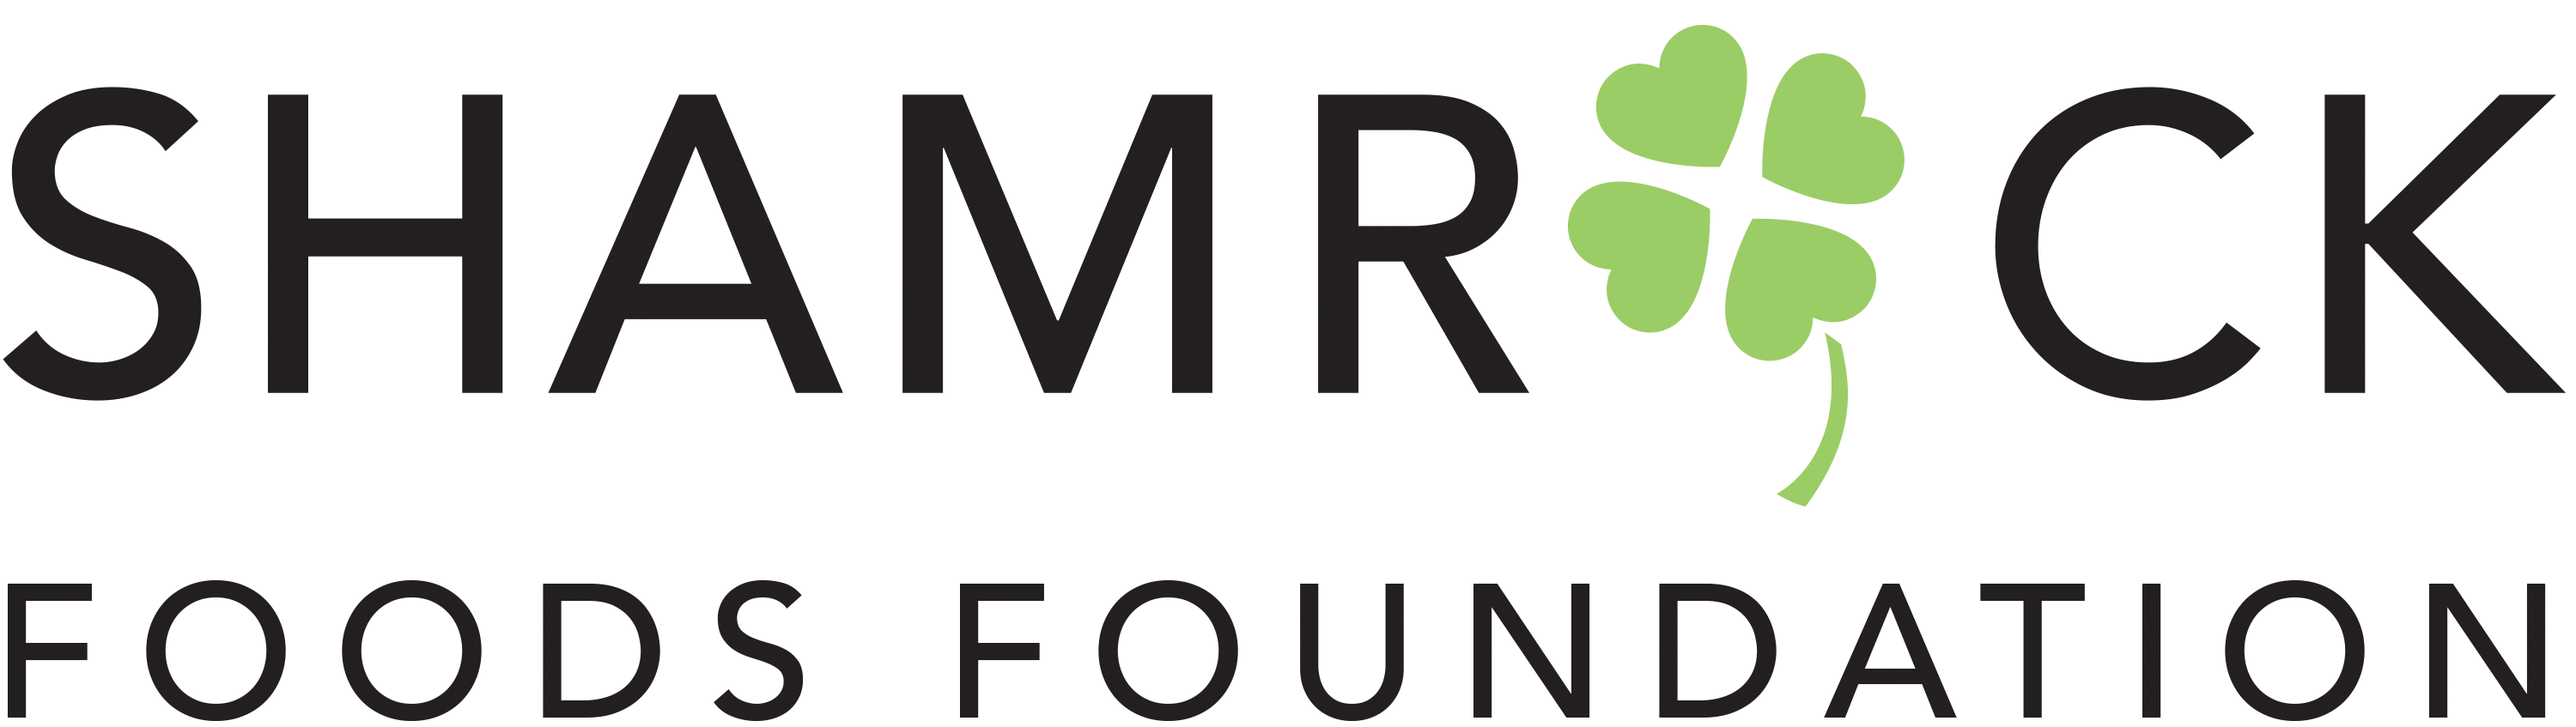 Shamrock Foods Foundation logo